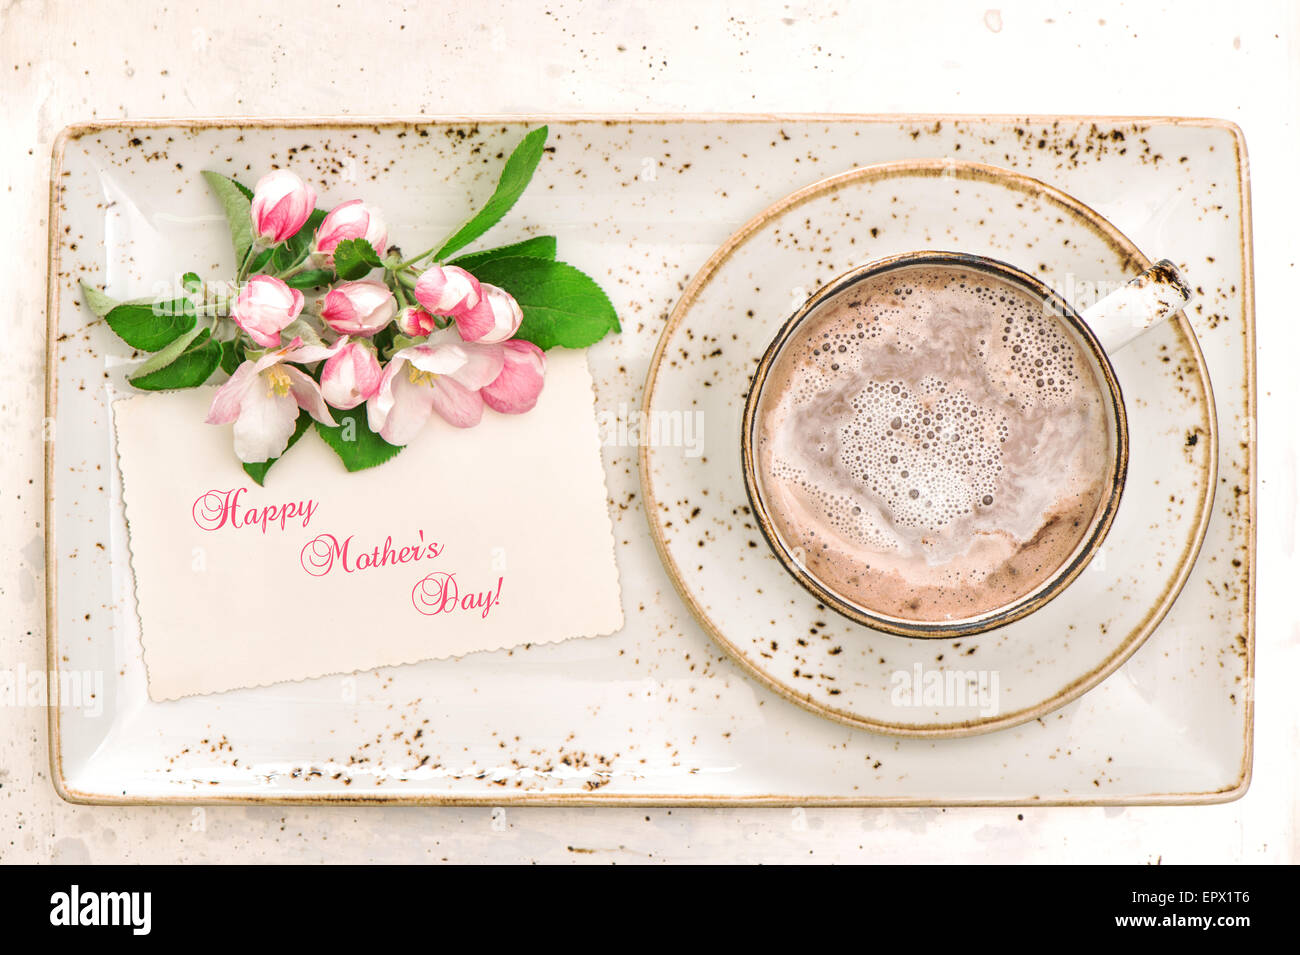 Chocolat chaud avec fleurs et greetimgs carte. Boisson au cacao avec mousse de lait. Happy Mother's Day ! Banque D'Images